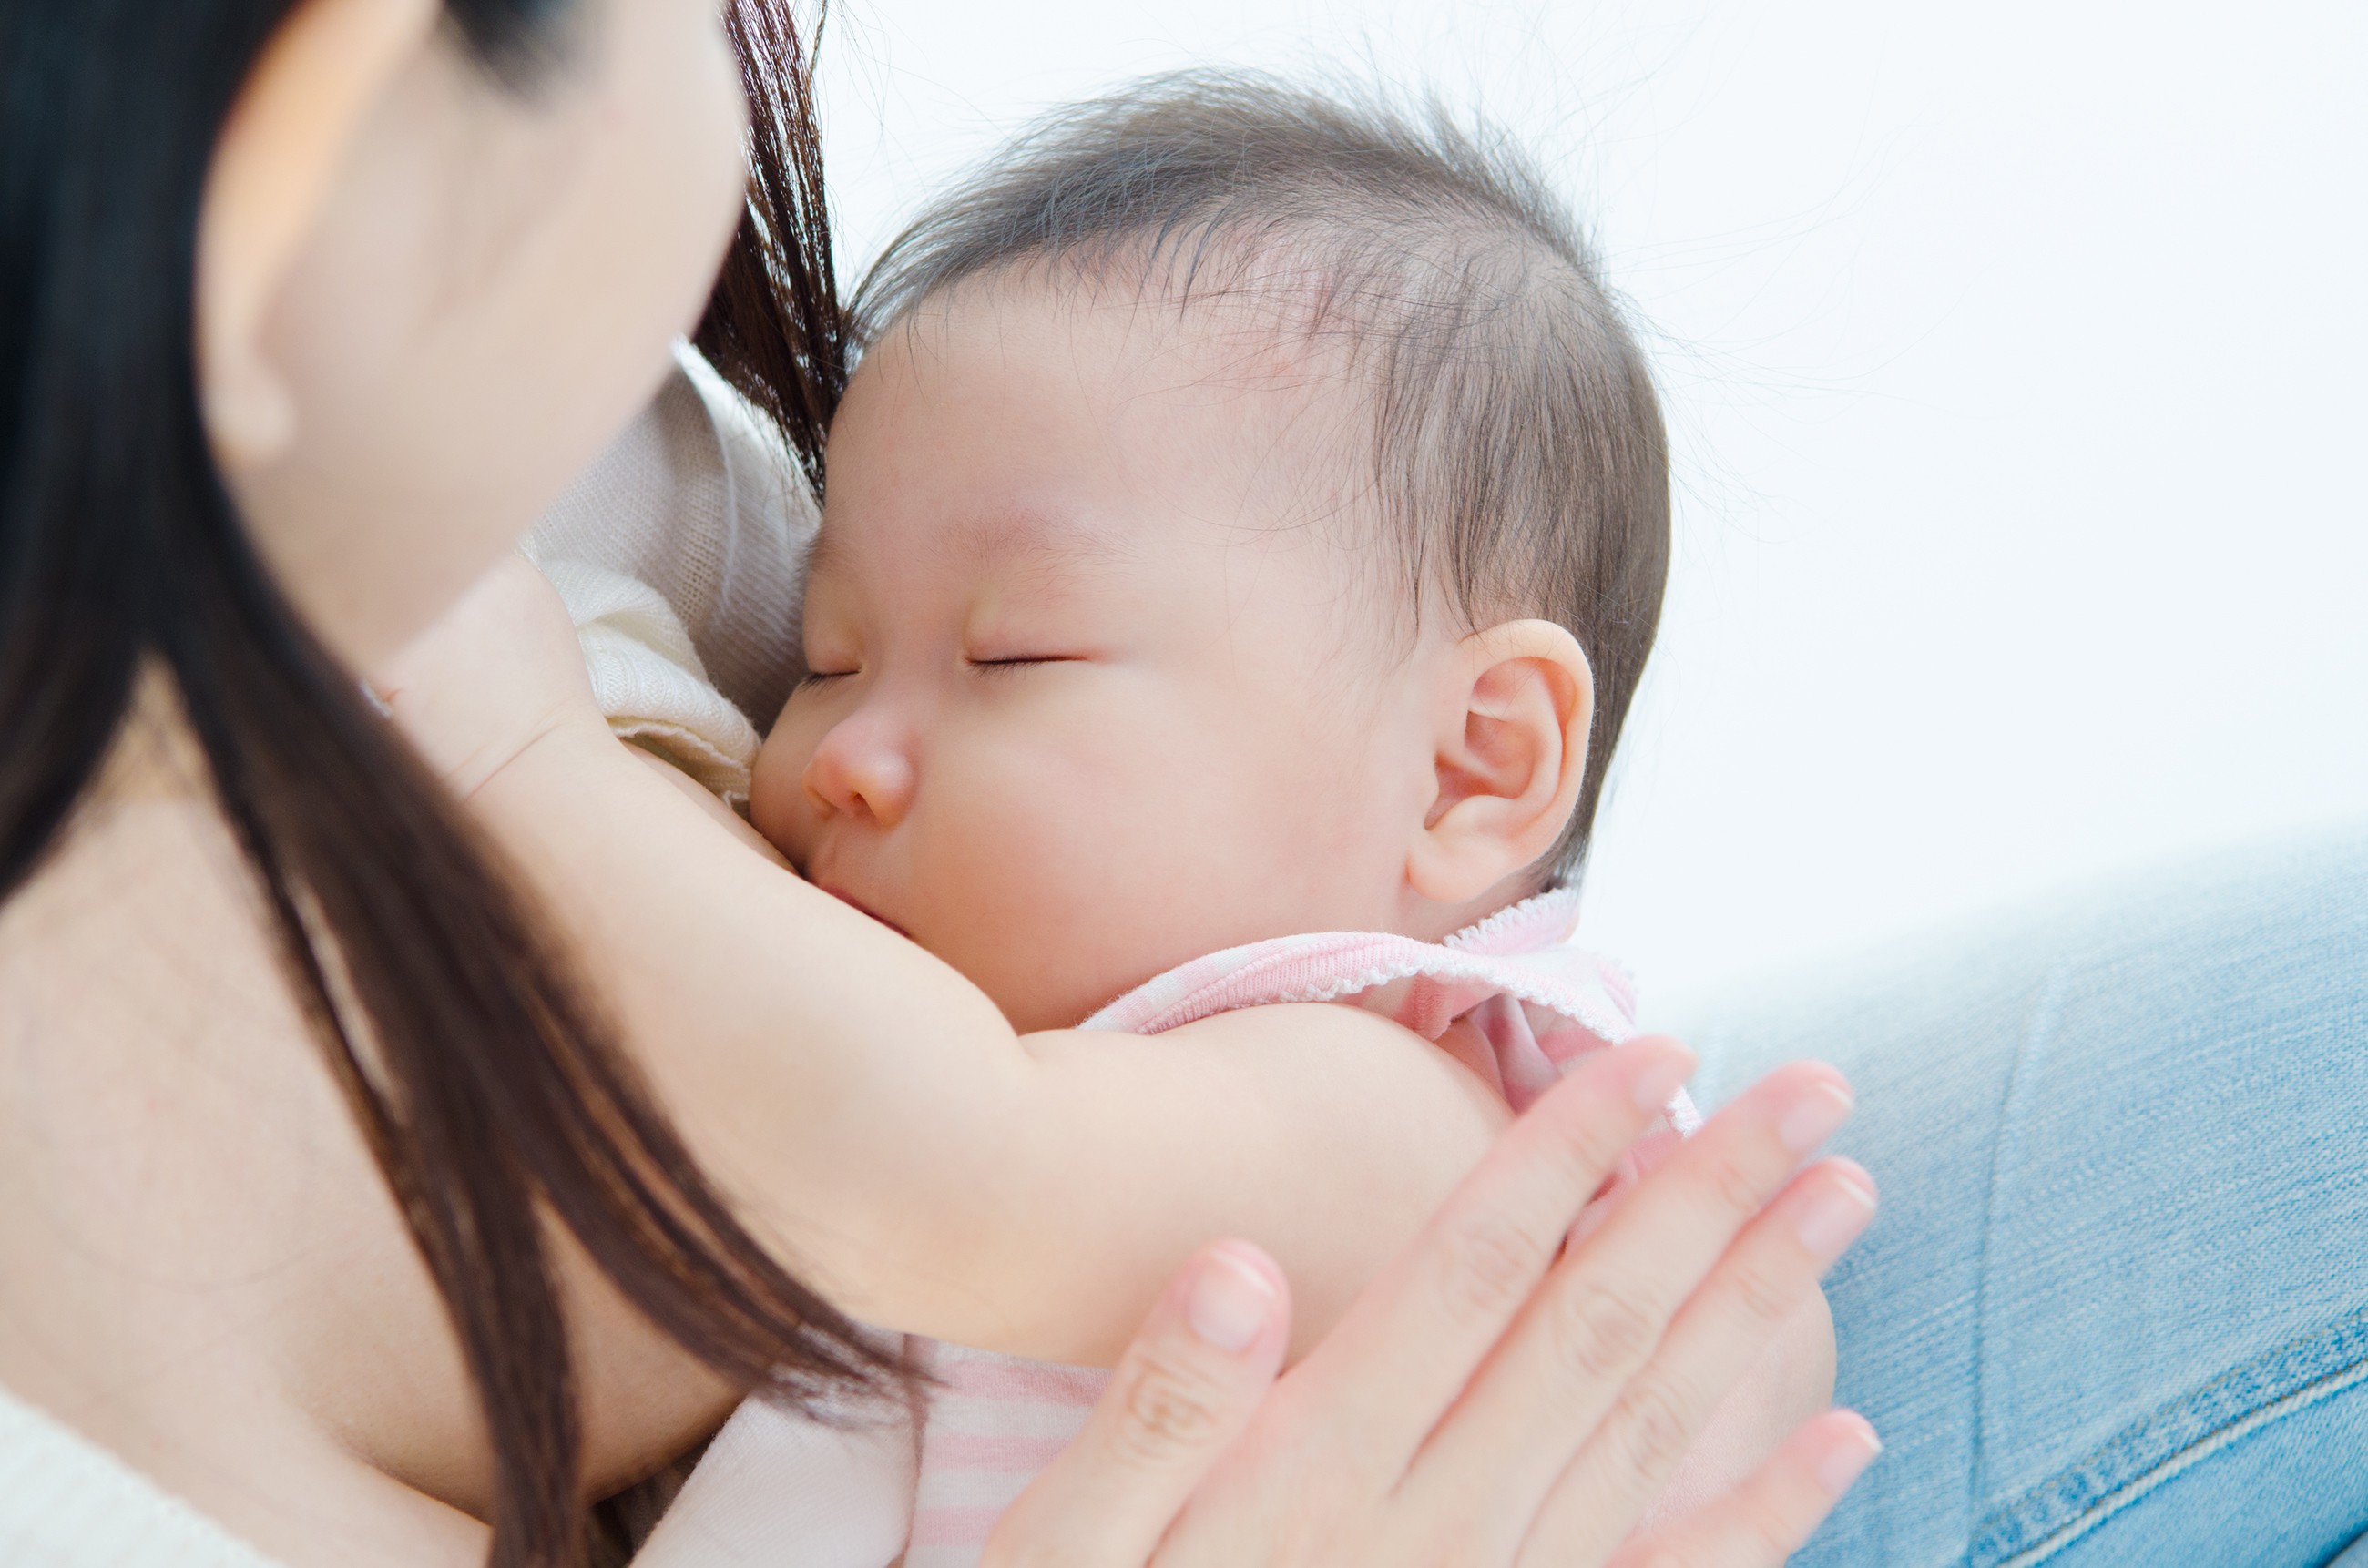 O leite materno contém vinte moléculas que aceleram o combate a infecções e inflamações (Foto: Thinkstock)